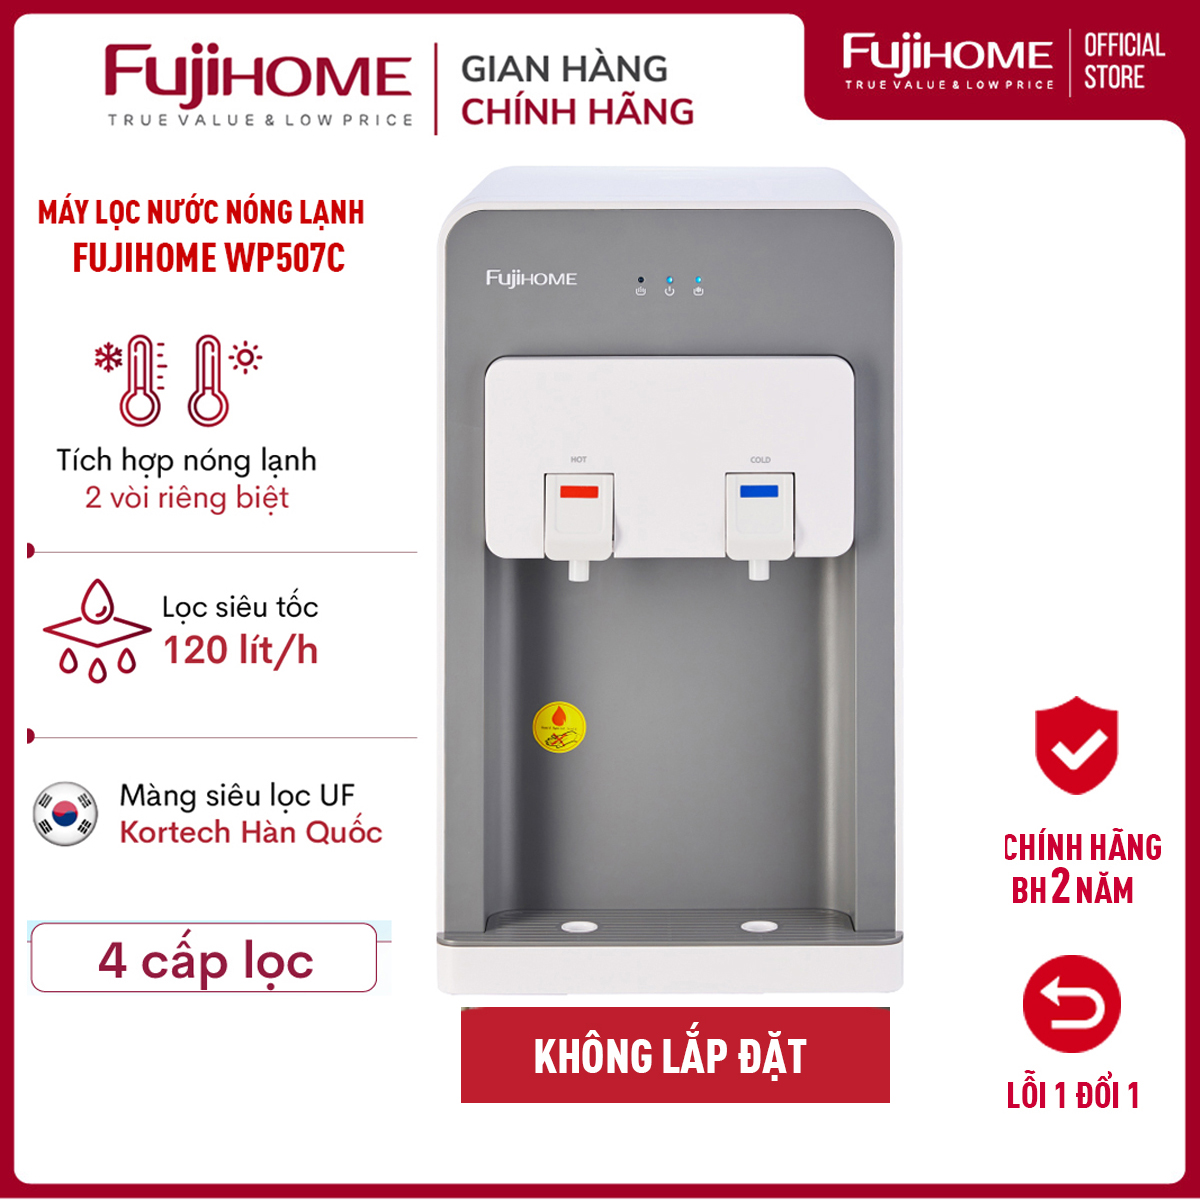 Máy lọc nước nóng lạnh để bàn cao cấp Fujihome WP507C, 4 cấp lọc với màng siêu lọc UF Kortech Hàn Quốc, làm lạnh bằng Block- Hàng Chính hãng